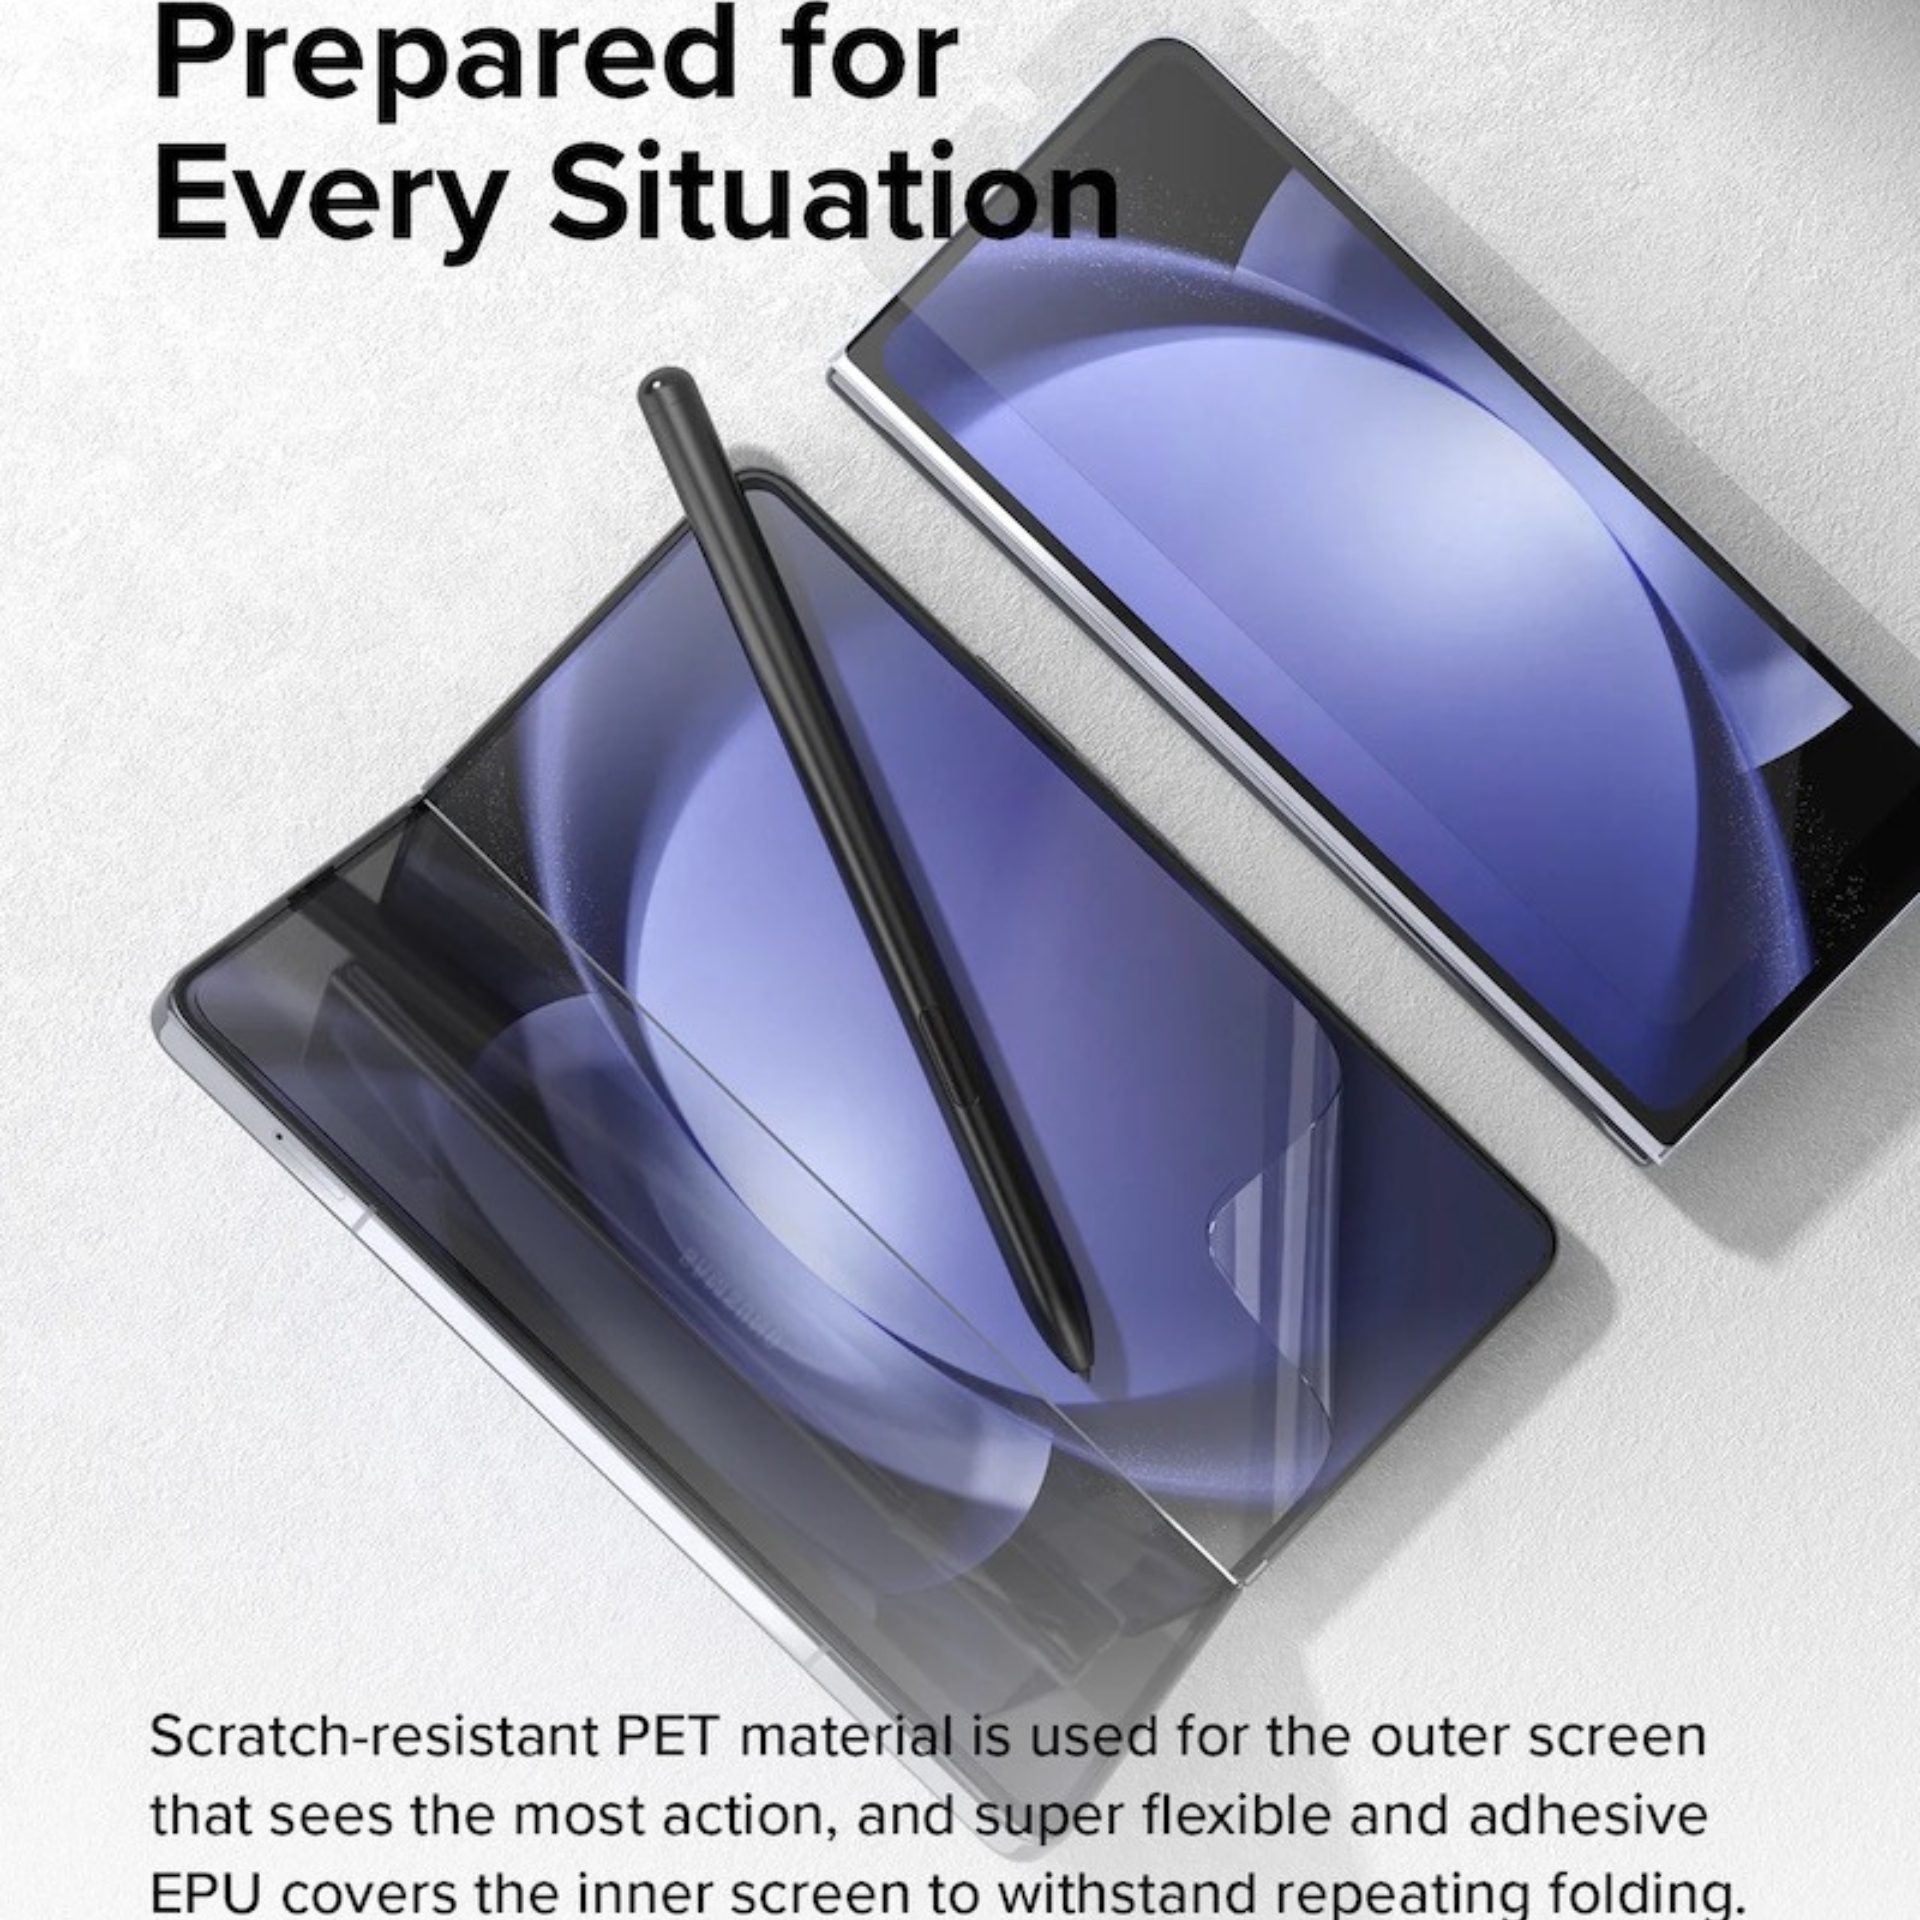 Bộ Dán Dẻo Ringke Dual Easy Film Dành Cho Samsung Galaxy Z Fold 5 5G, 1 Mặt Trong, 1 Mặt Ngoài - Hàng Chính Hãng